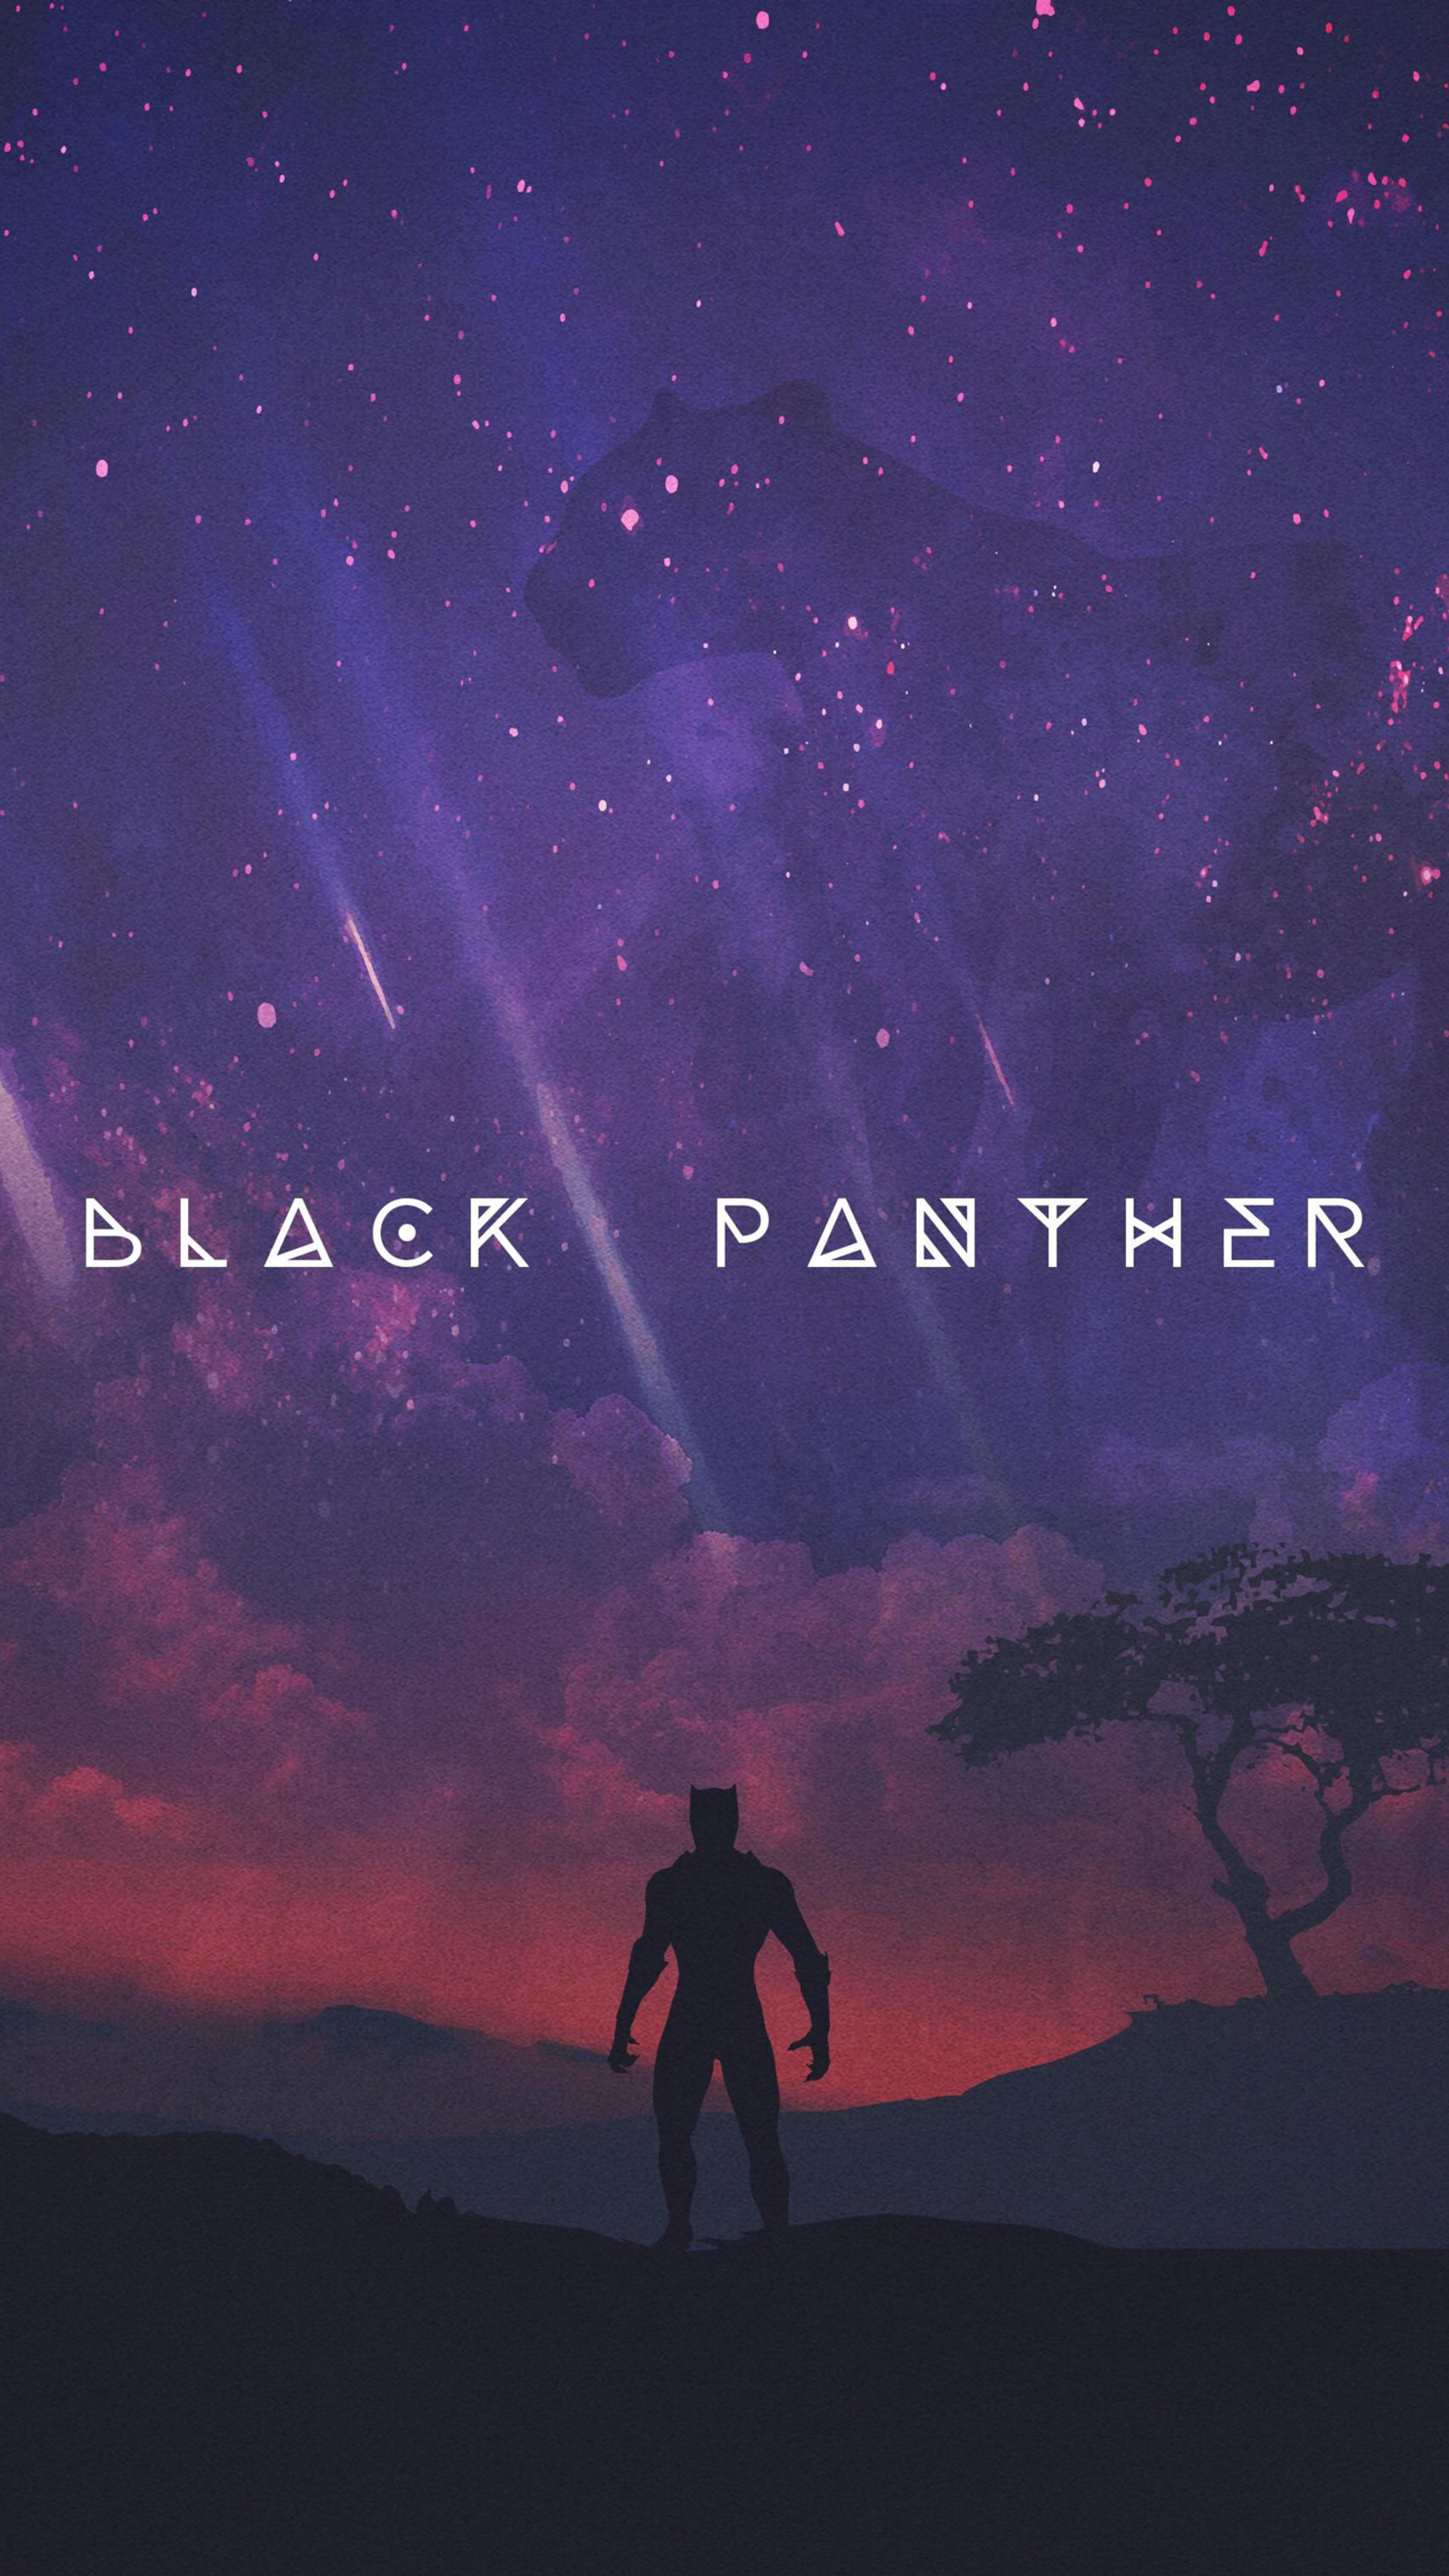 Black Panther Movie Artwork 2018 Sony Xperia X, XZ, Z5